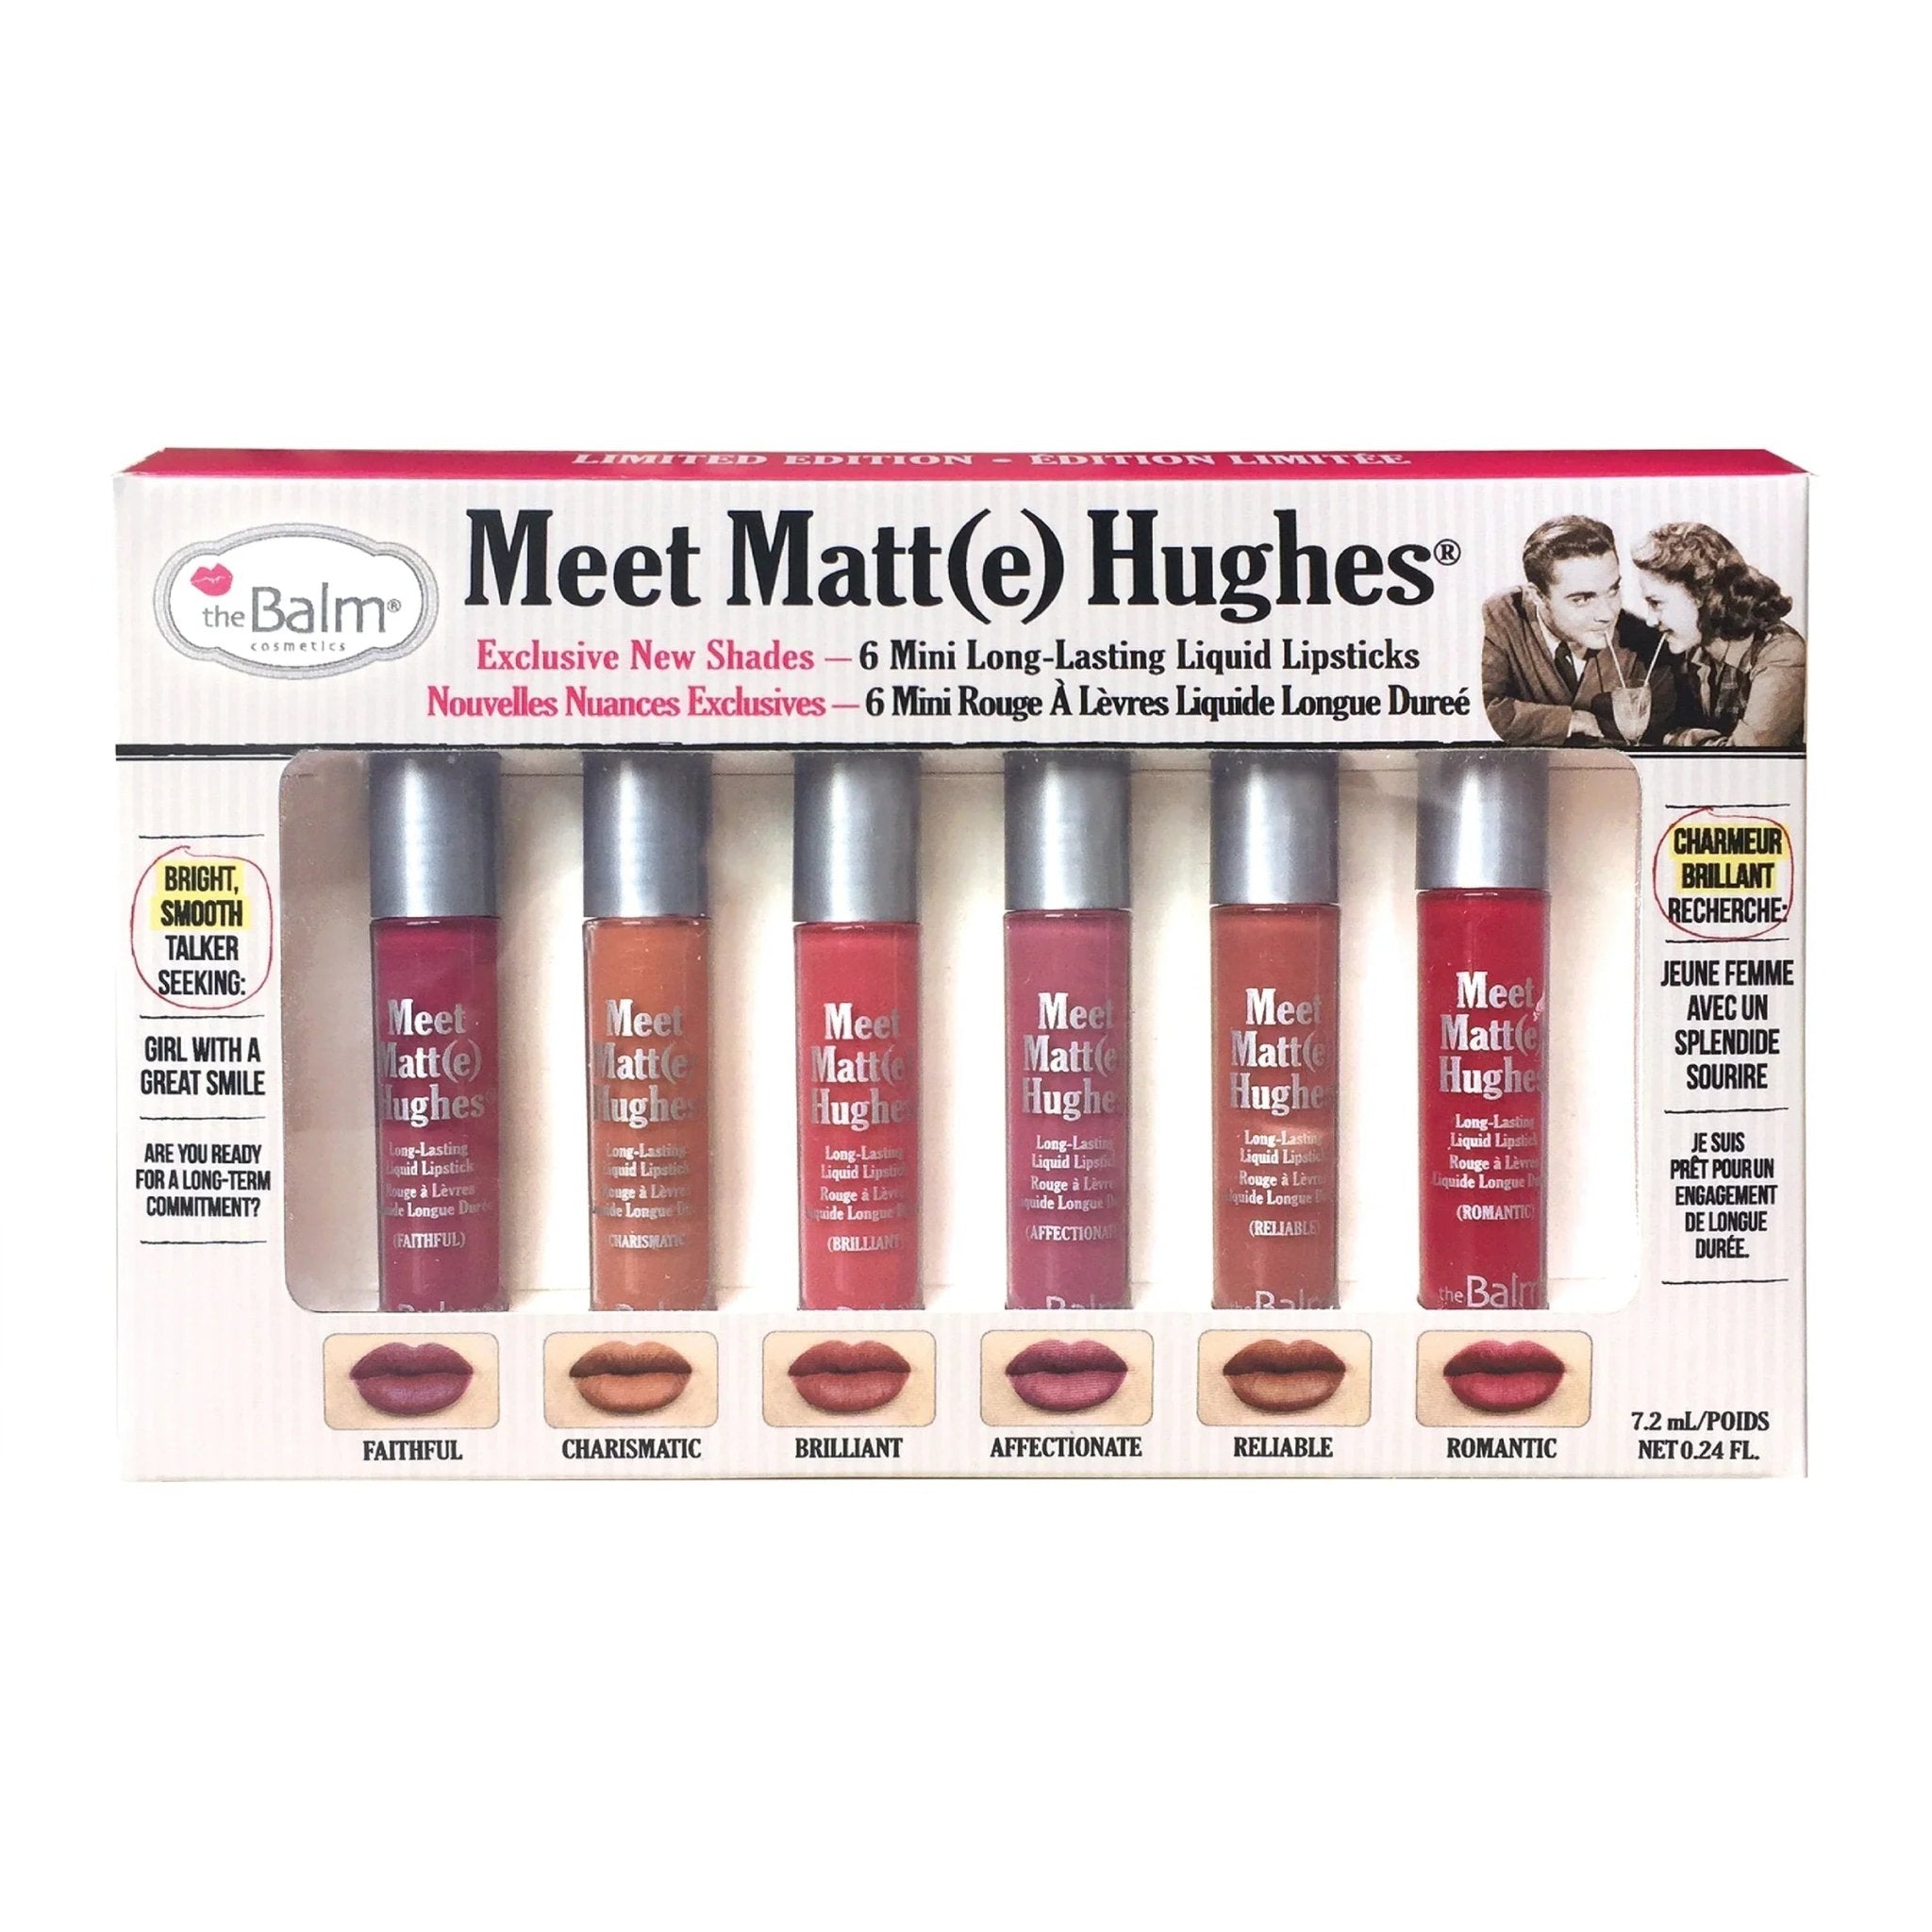 The Balm Meet Matt(e) Hughes Vol. 2 Set of 6 Mini Liquid Lipsticks - AllurebeautypkThe Balm Meet Matt(e) Hughes Vol. 2 Set of 6 Mini Liquid Lipsticks